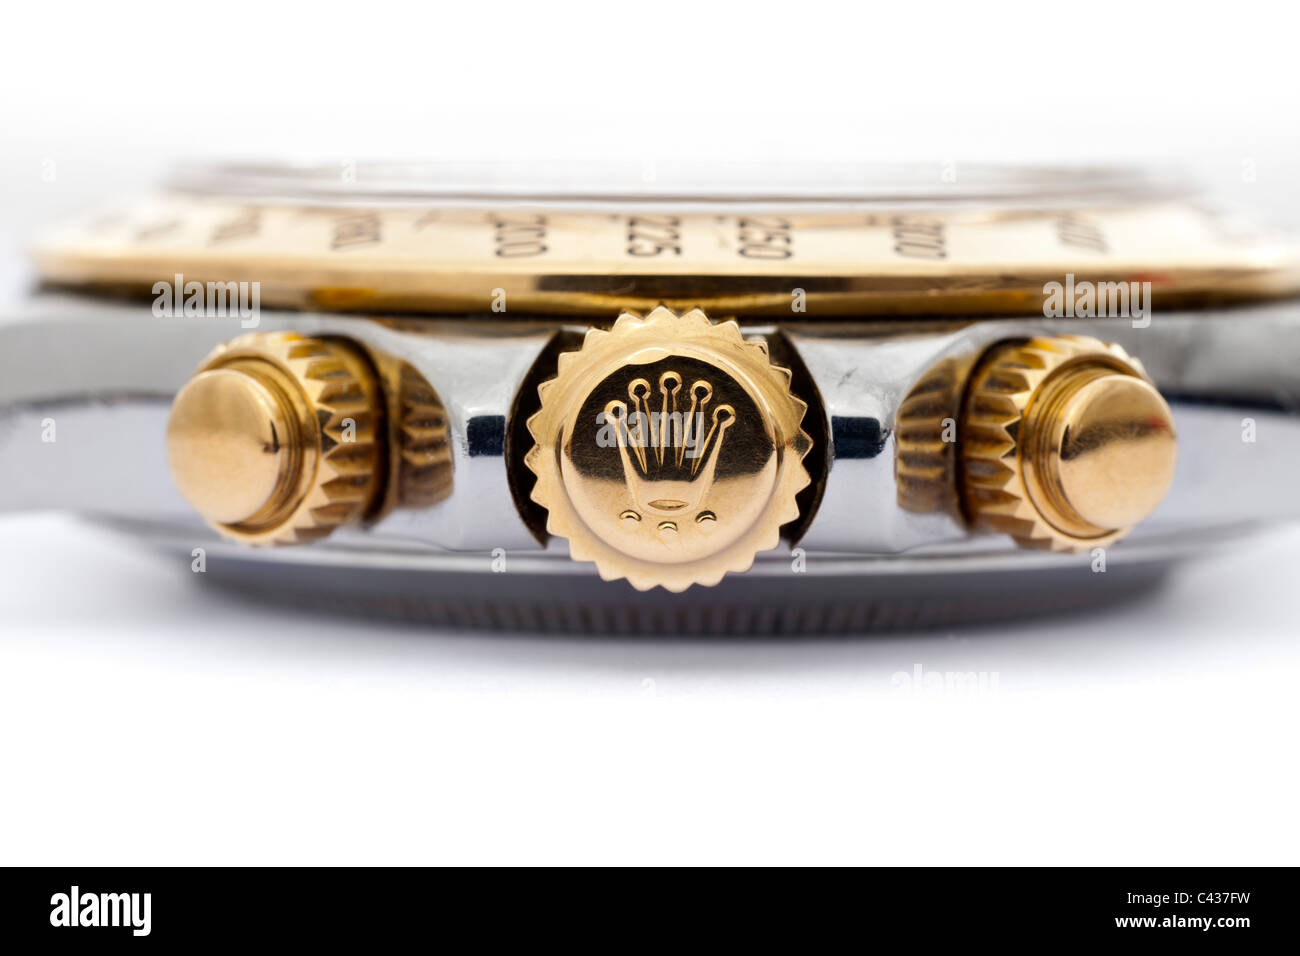 Couronne de remontoir de montre Rolex Oyster Perpetual Cosmograph Daytona  chronometre or 18k et acier montre-bracelet chronographe suisse JMH4900  Photo Stock - Alamy